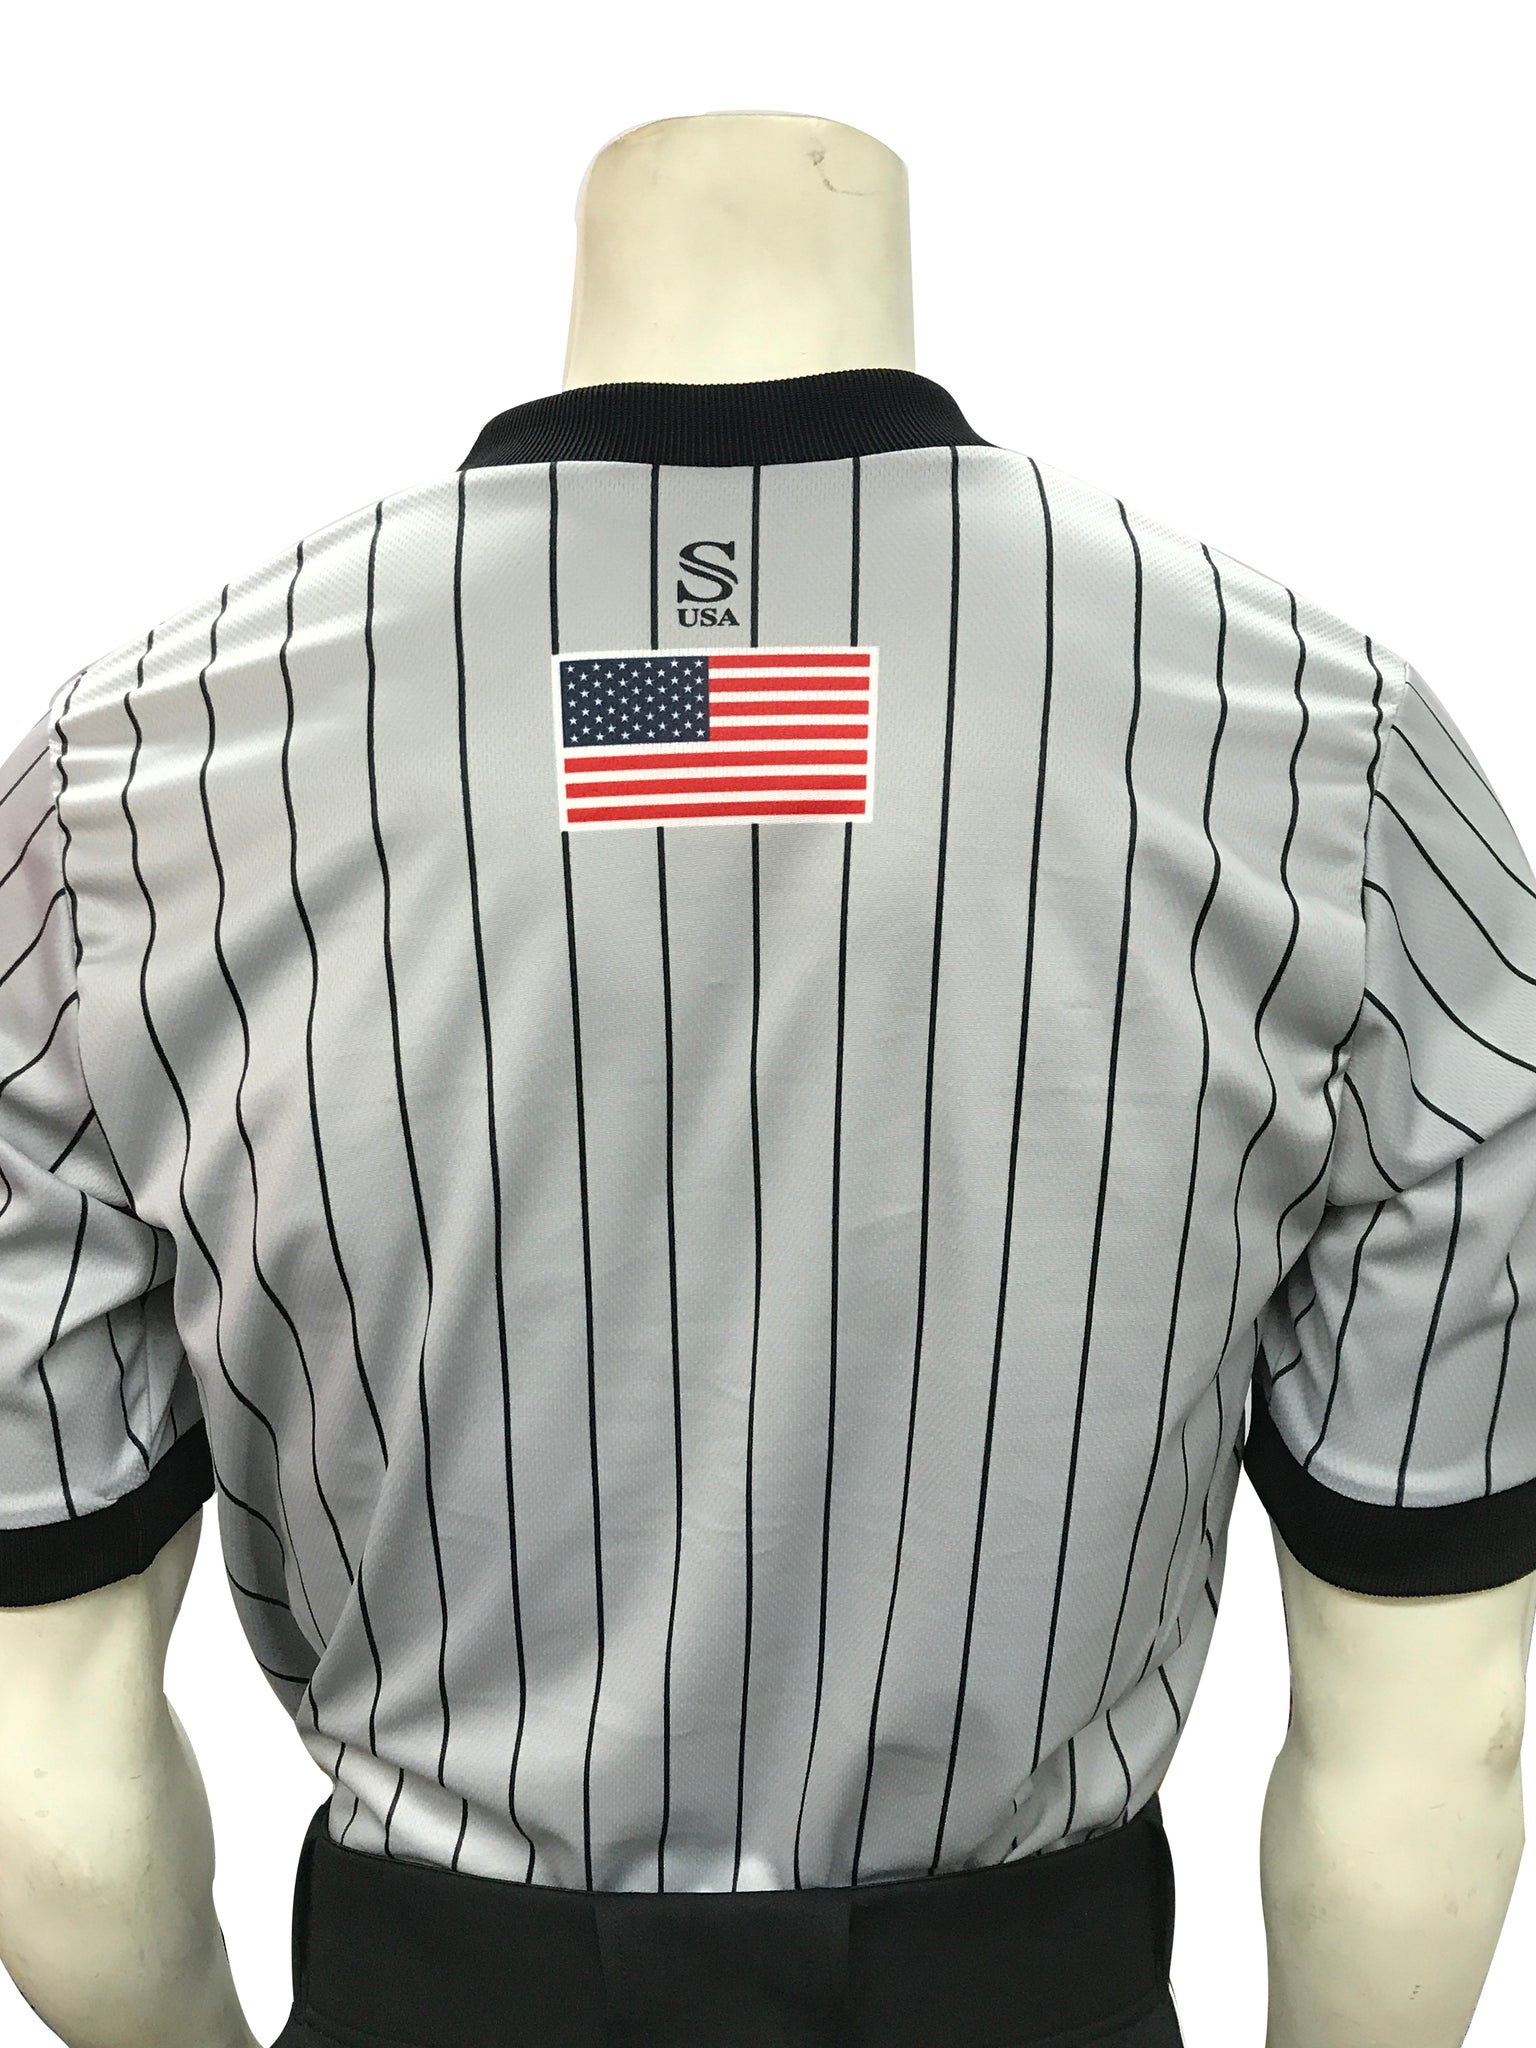 I205-WFBK - Smitty "Made in USA" - WFBK IAABO Grey Basketball Men's Short Sleeve Shirt